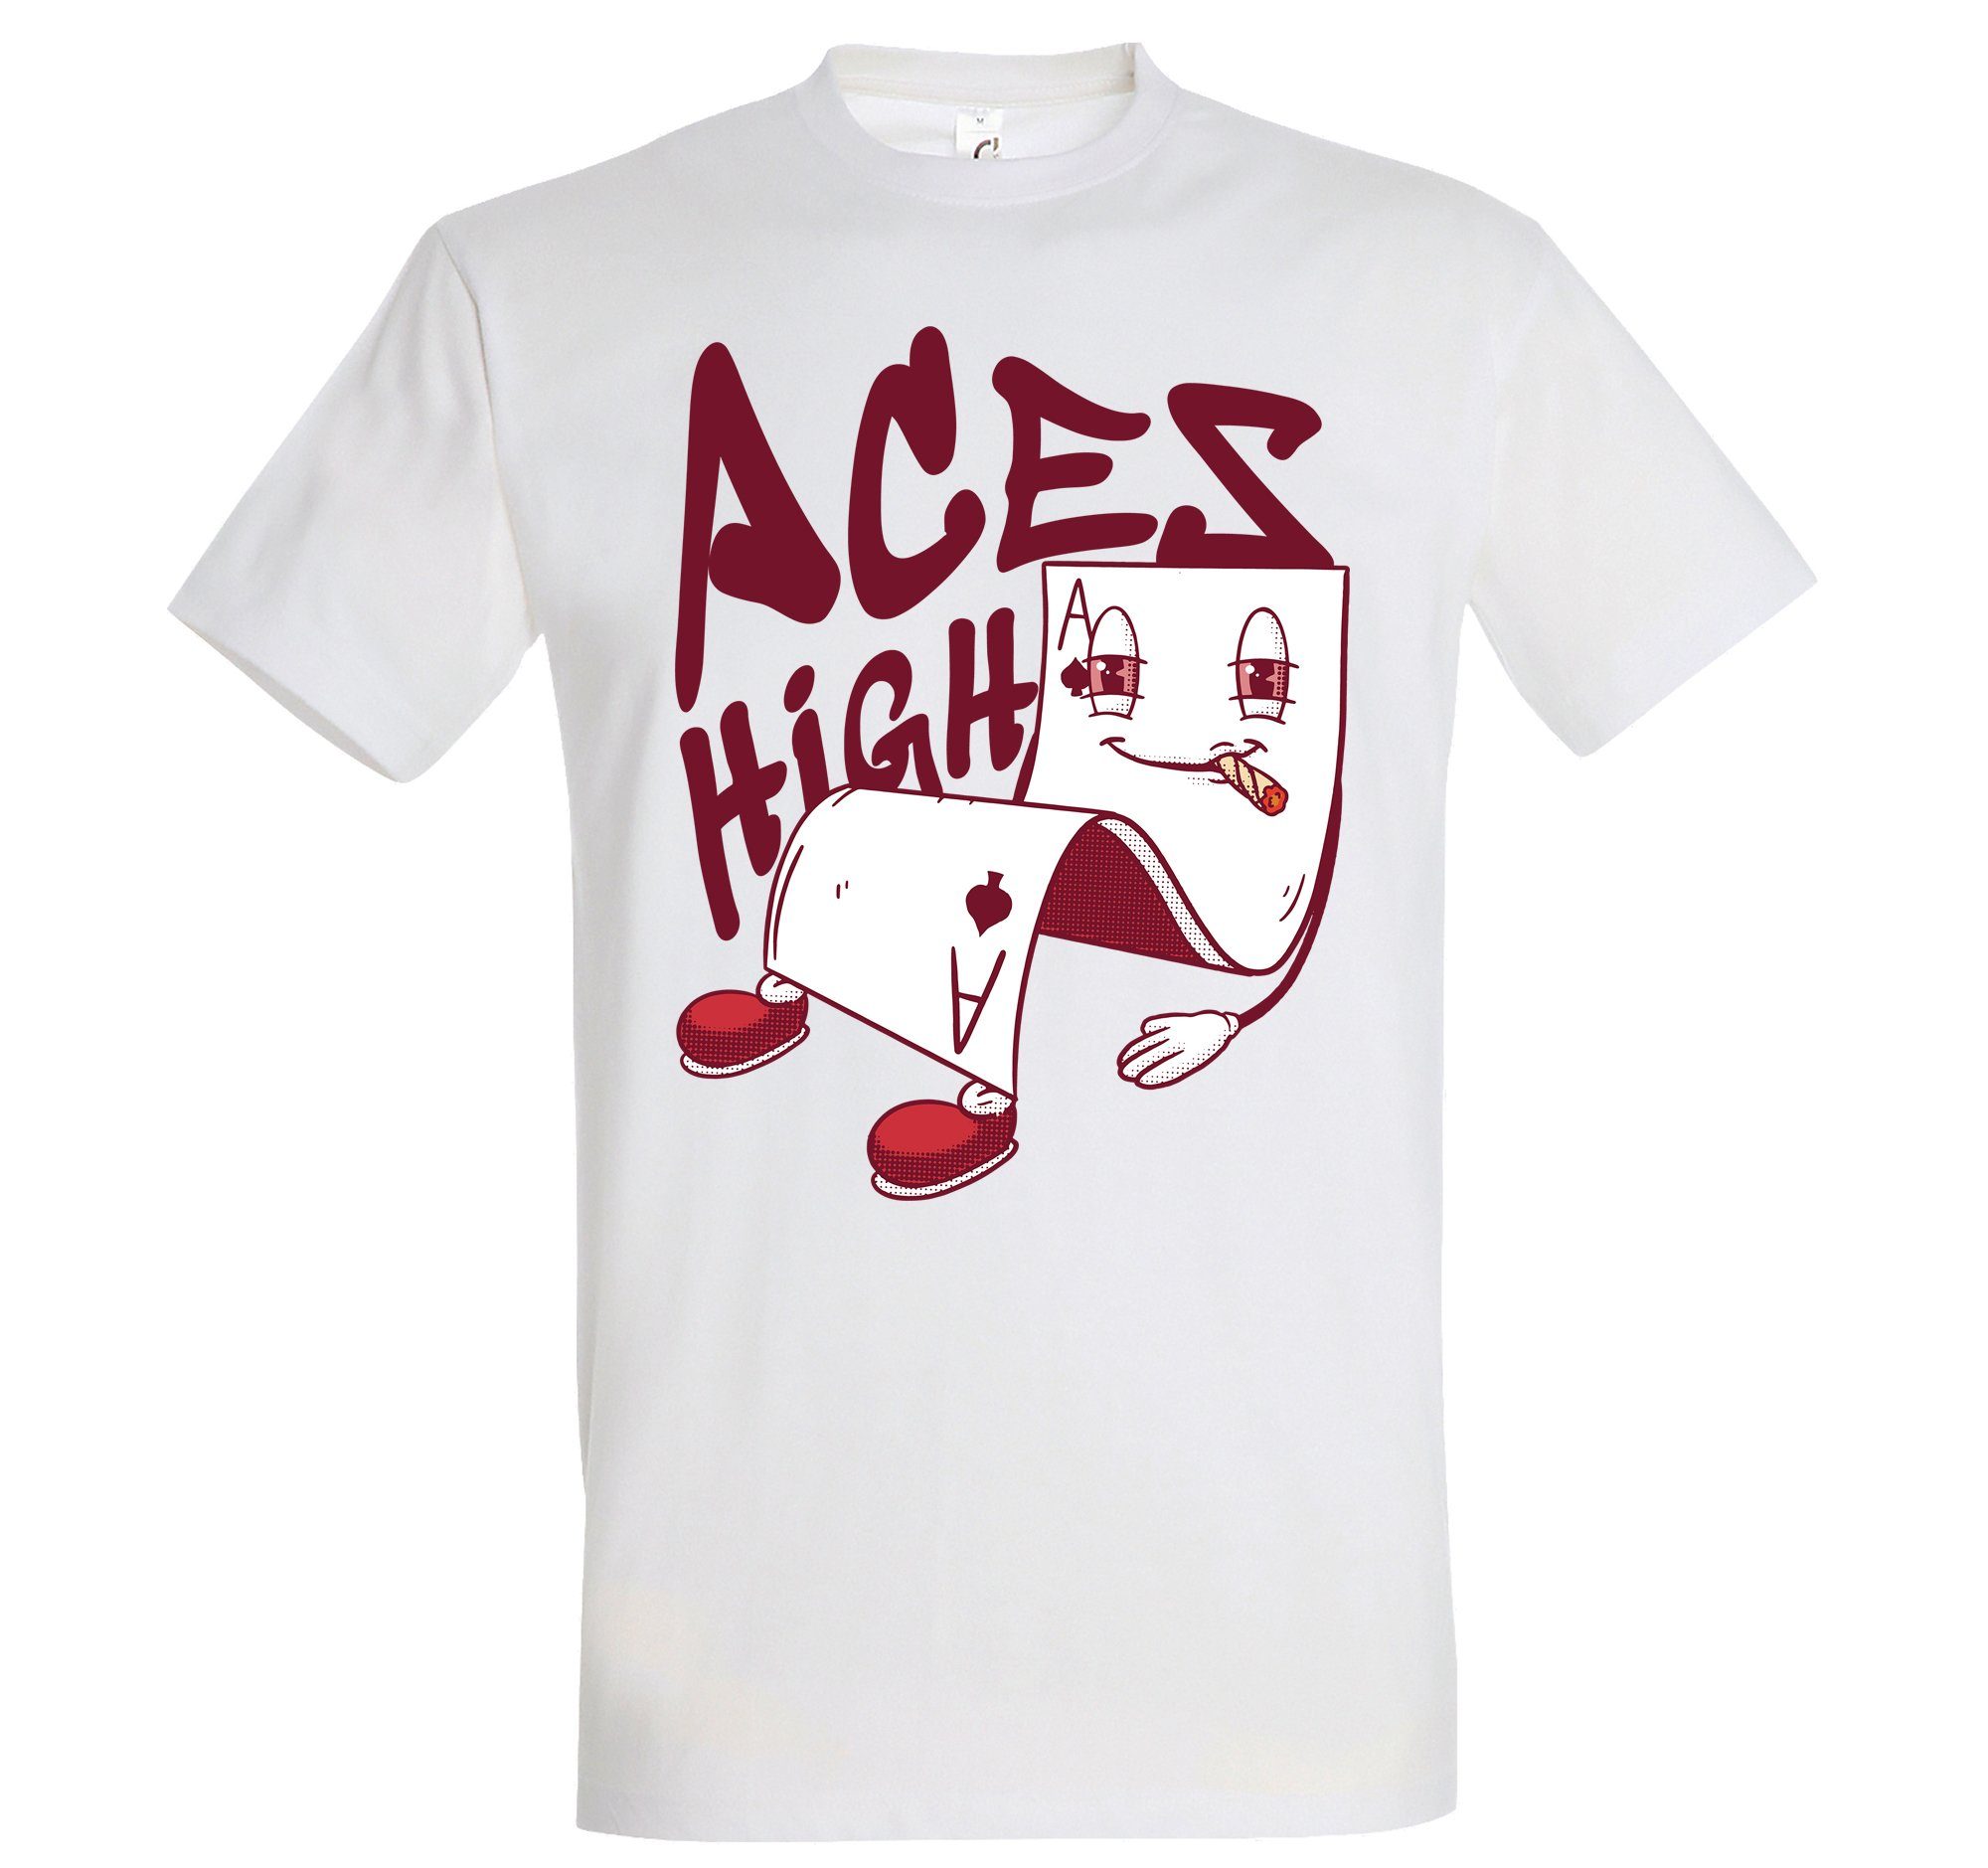 Weiß trendigem Designz High Herren T-Shirt mit Youth Frontprint Aces Shirt